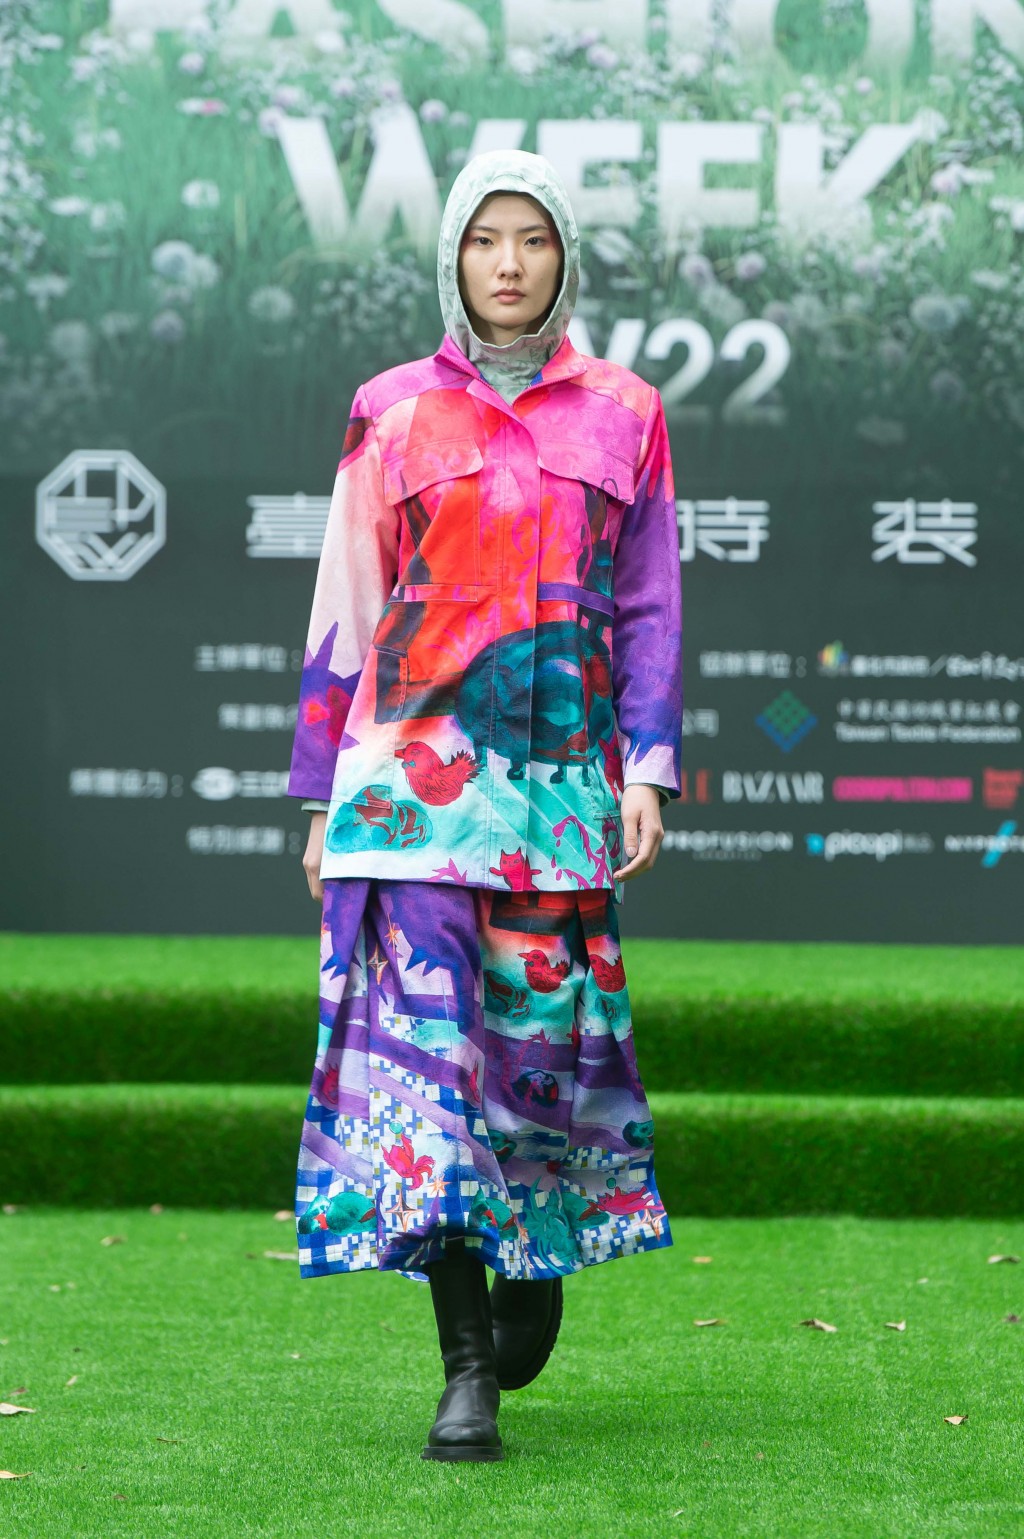 Taipei Fashion Week AW22 to highlight sustainability